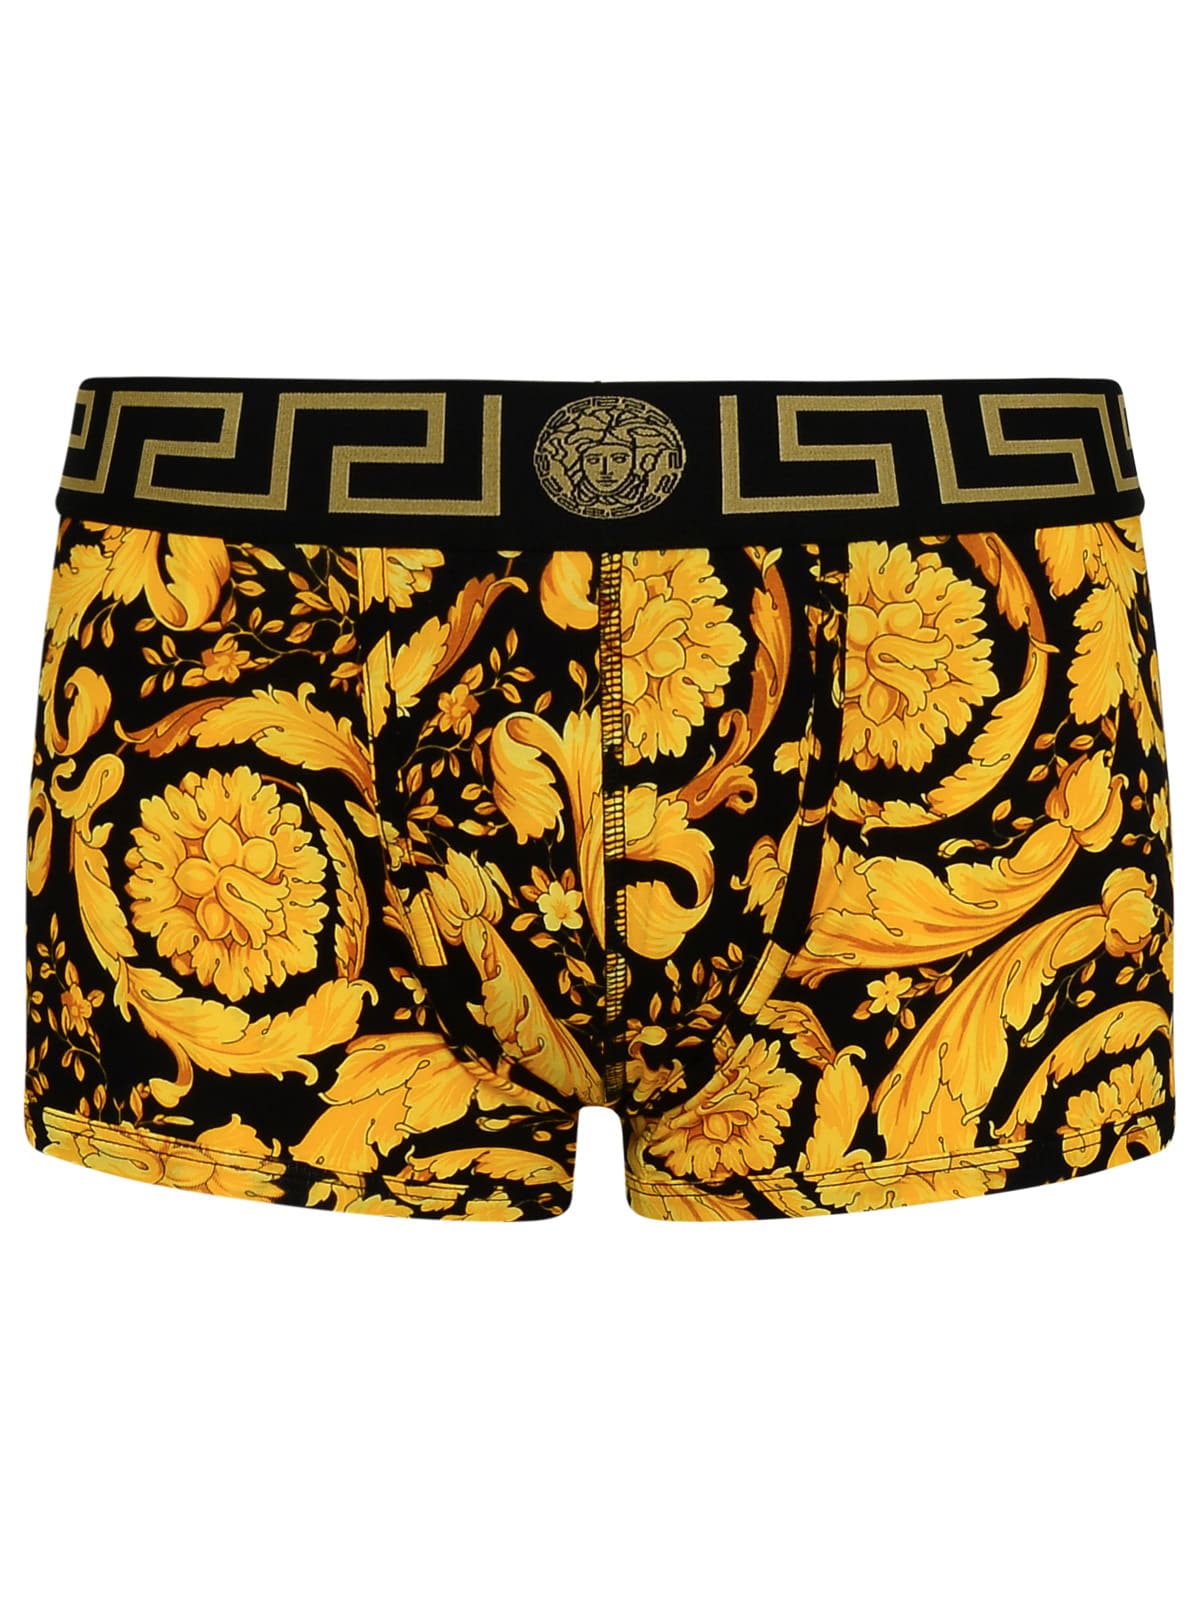 Gold Cotton Boxer Shorts